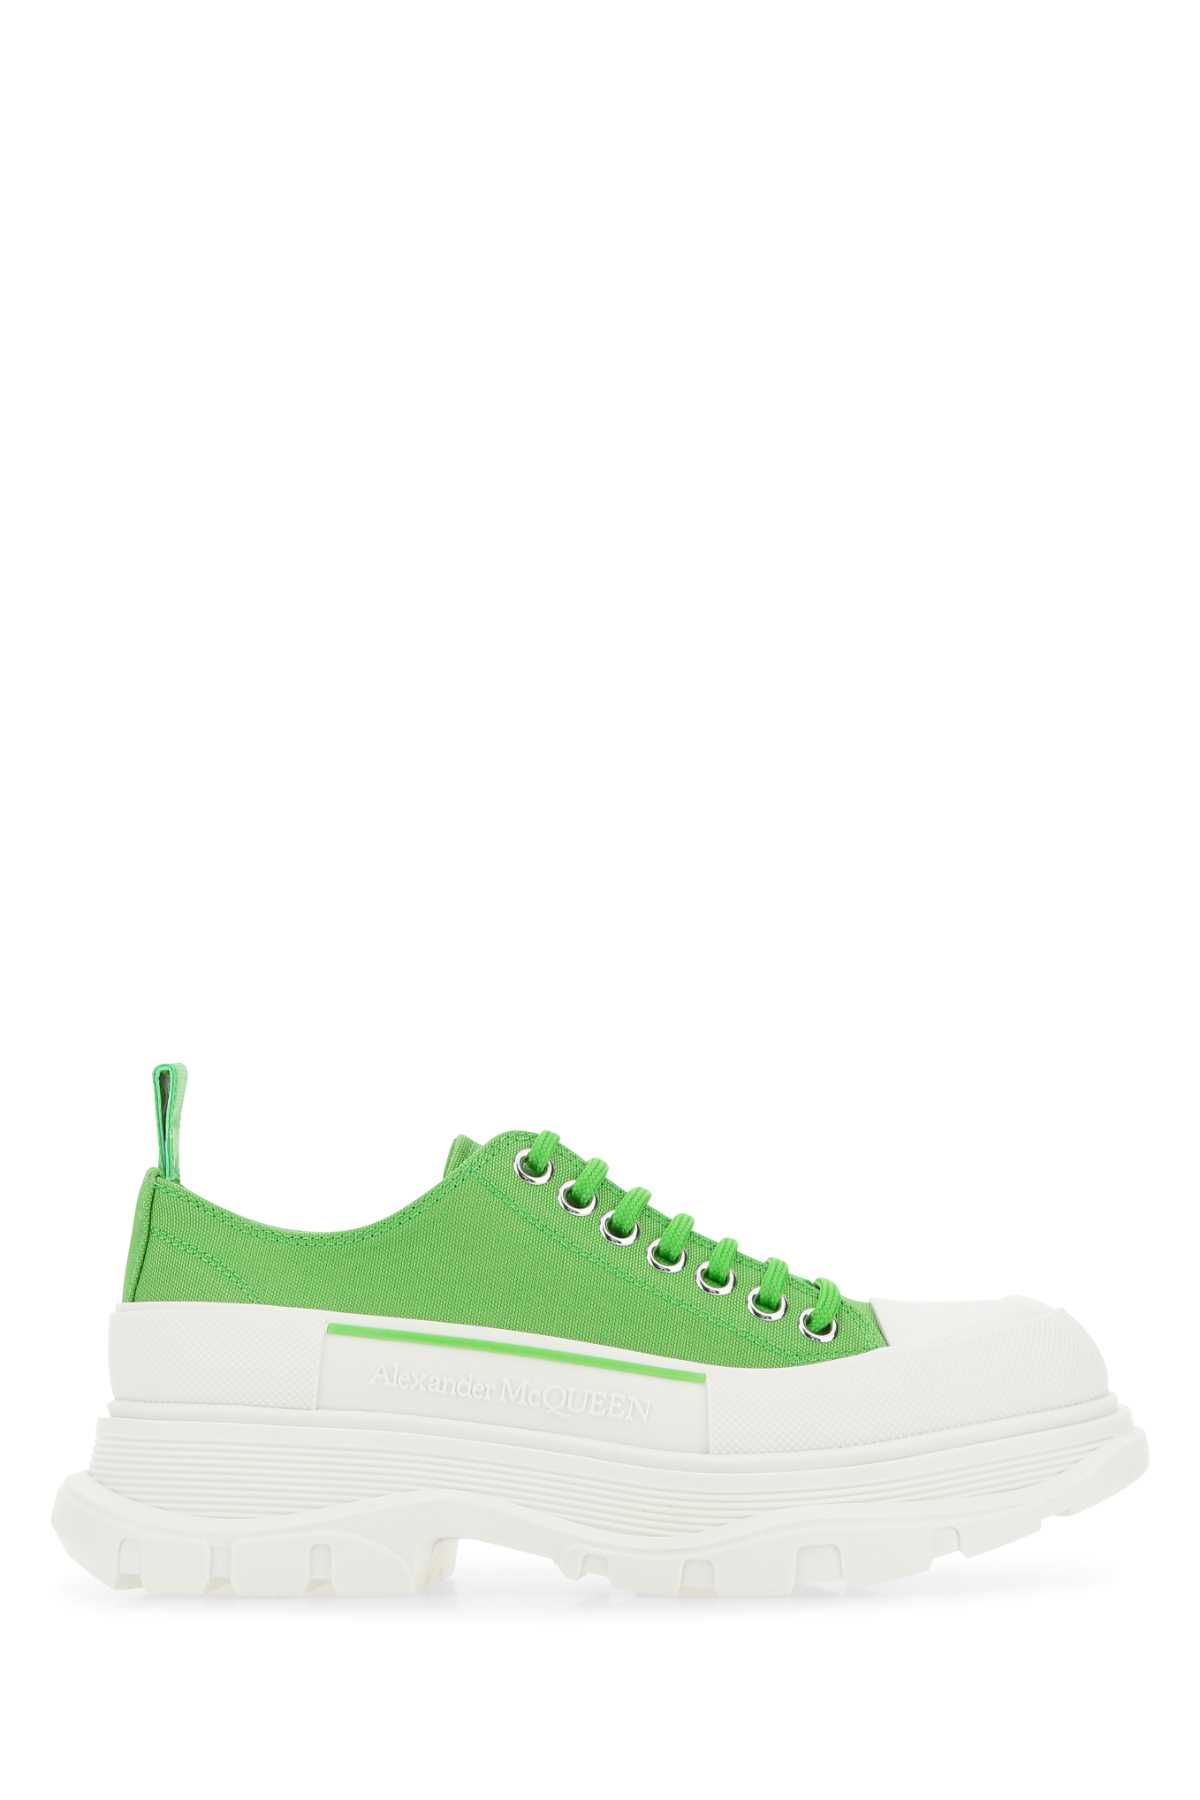 Alexander McQueen Green Canvas Tread Slick Sneakers